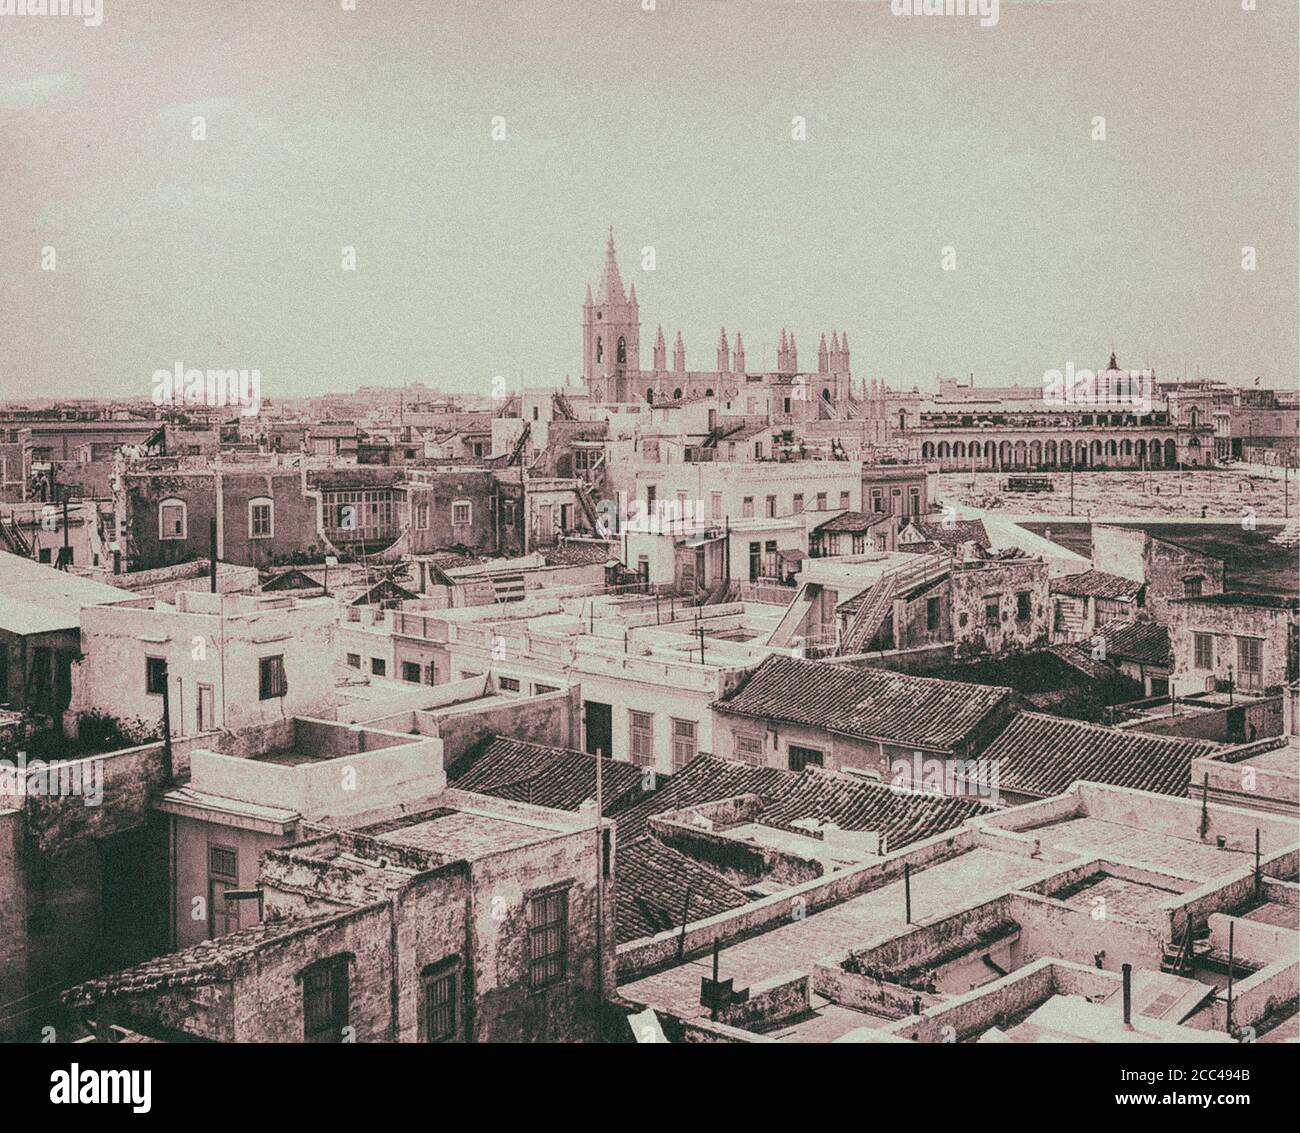 La vieille Havane. Panorama de la Havane. Cuba. 1904 Banque D'Images